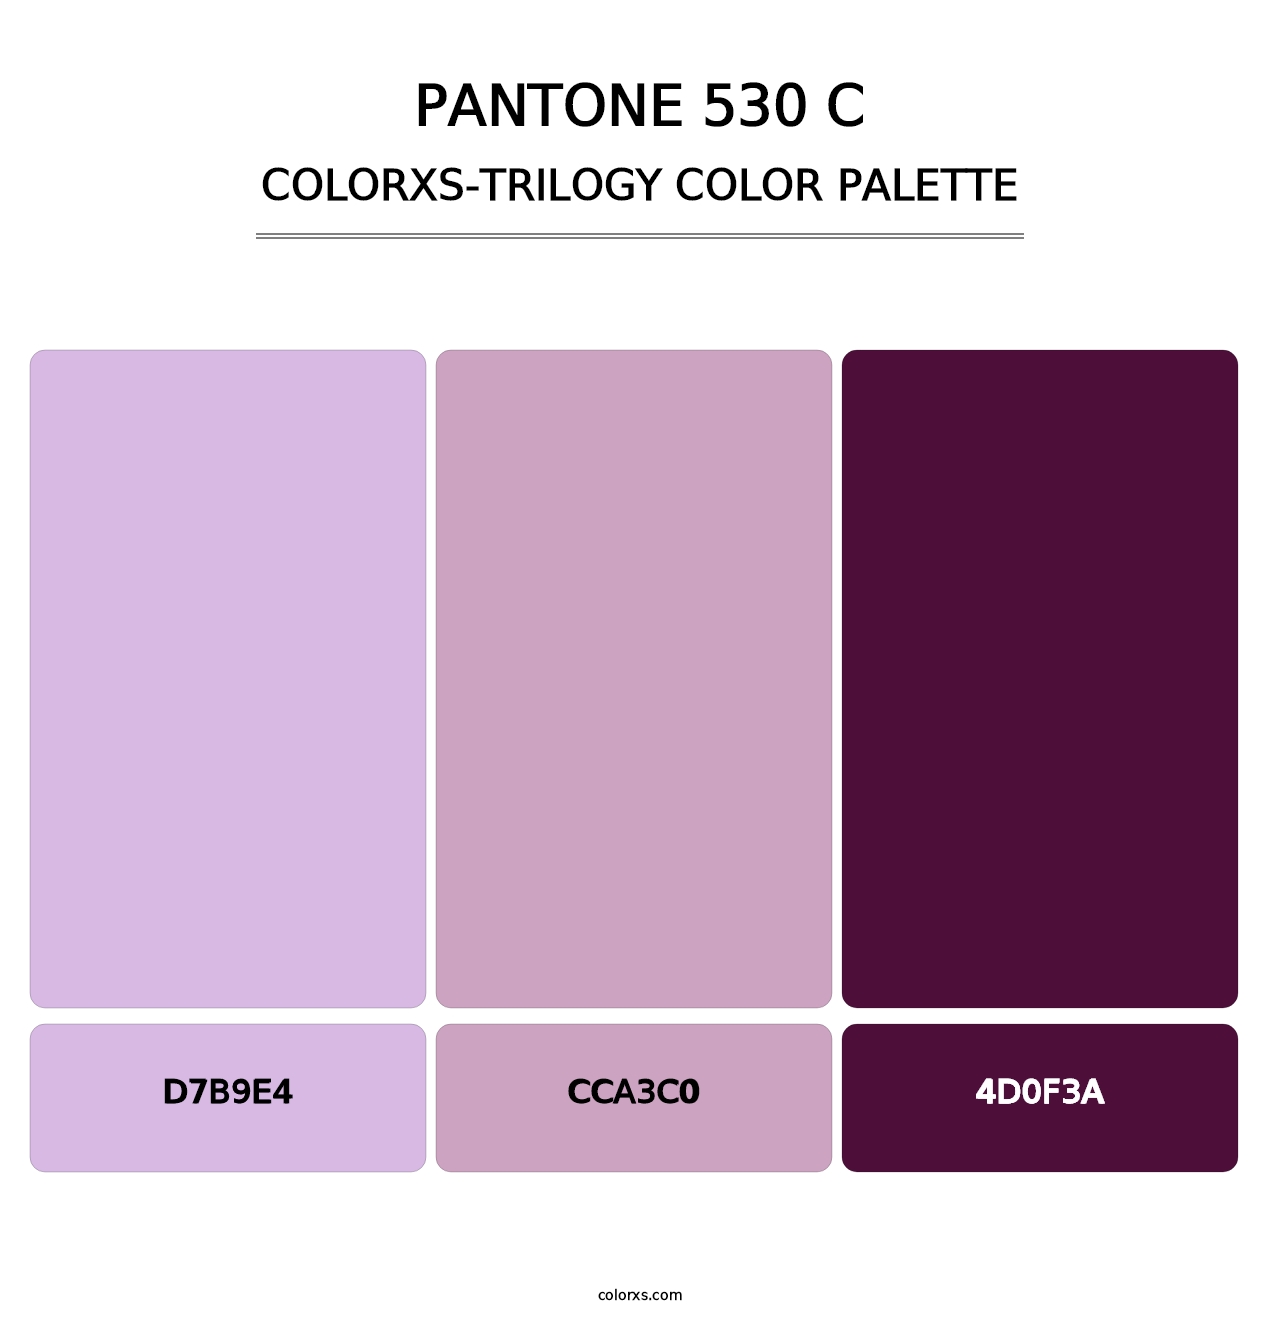 PANTONE 530 C - Colorxs Trilogy Palette